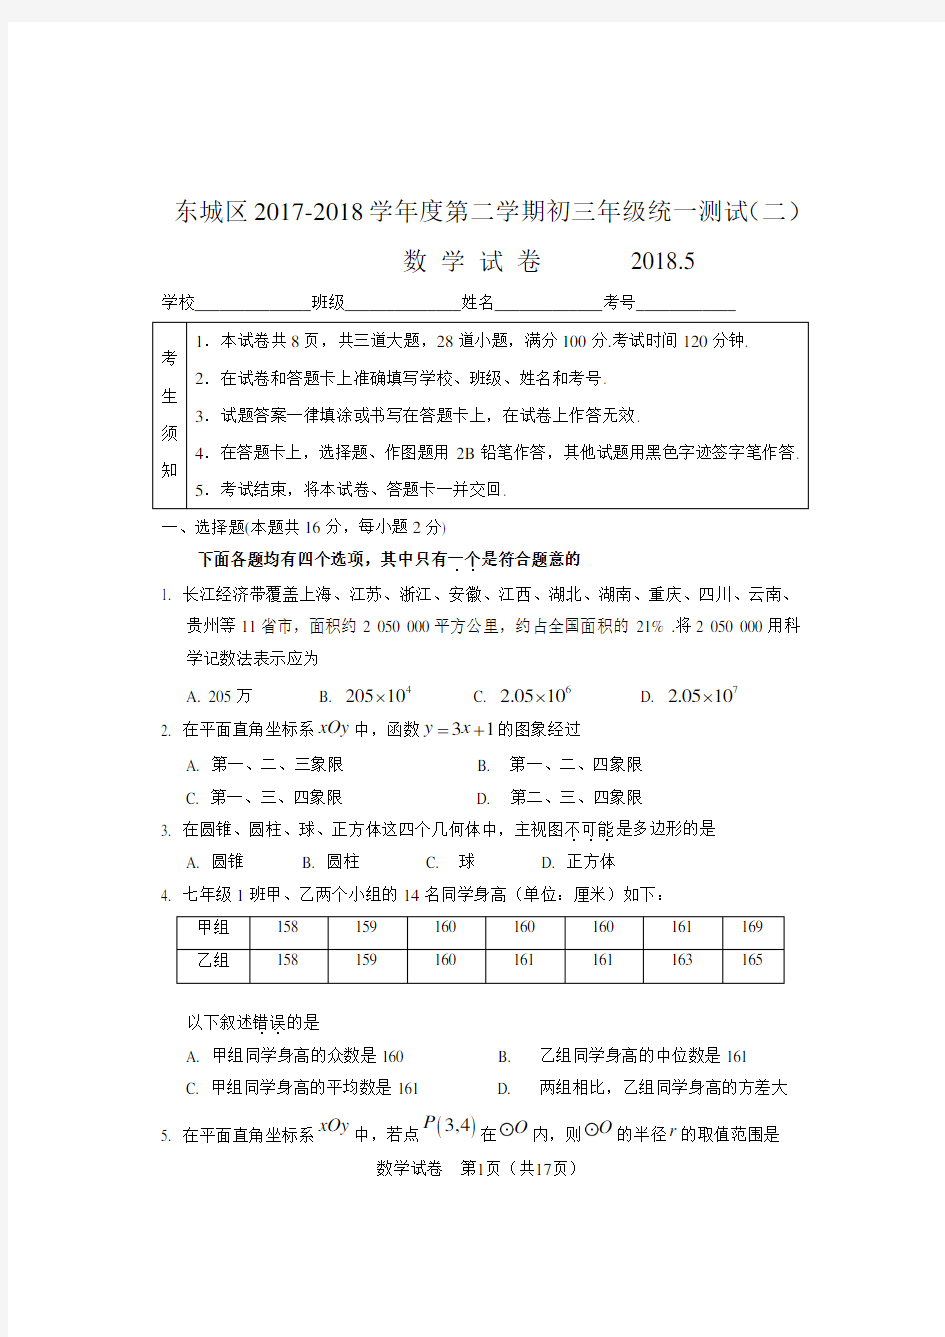 北京市东城区2017-2018学年度第二学期初三年级统一测试(二模)数学试卷及答案